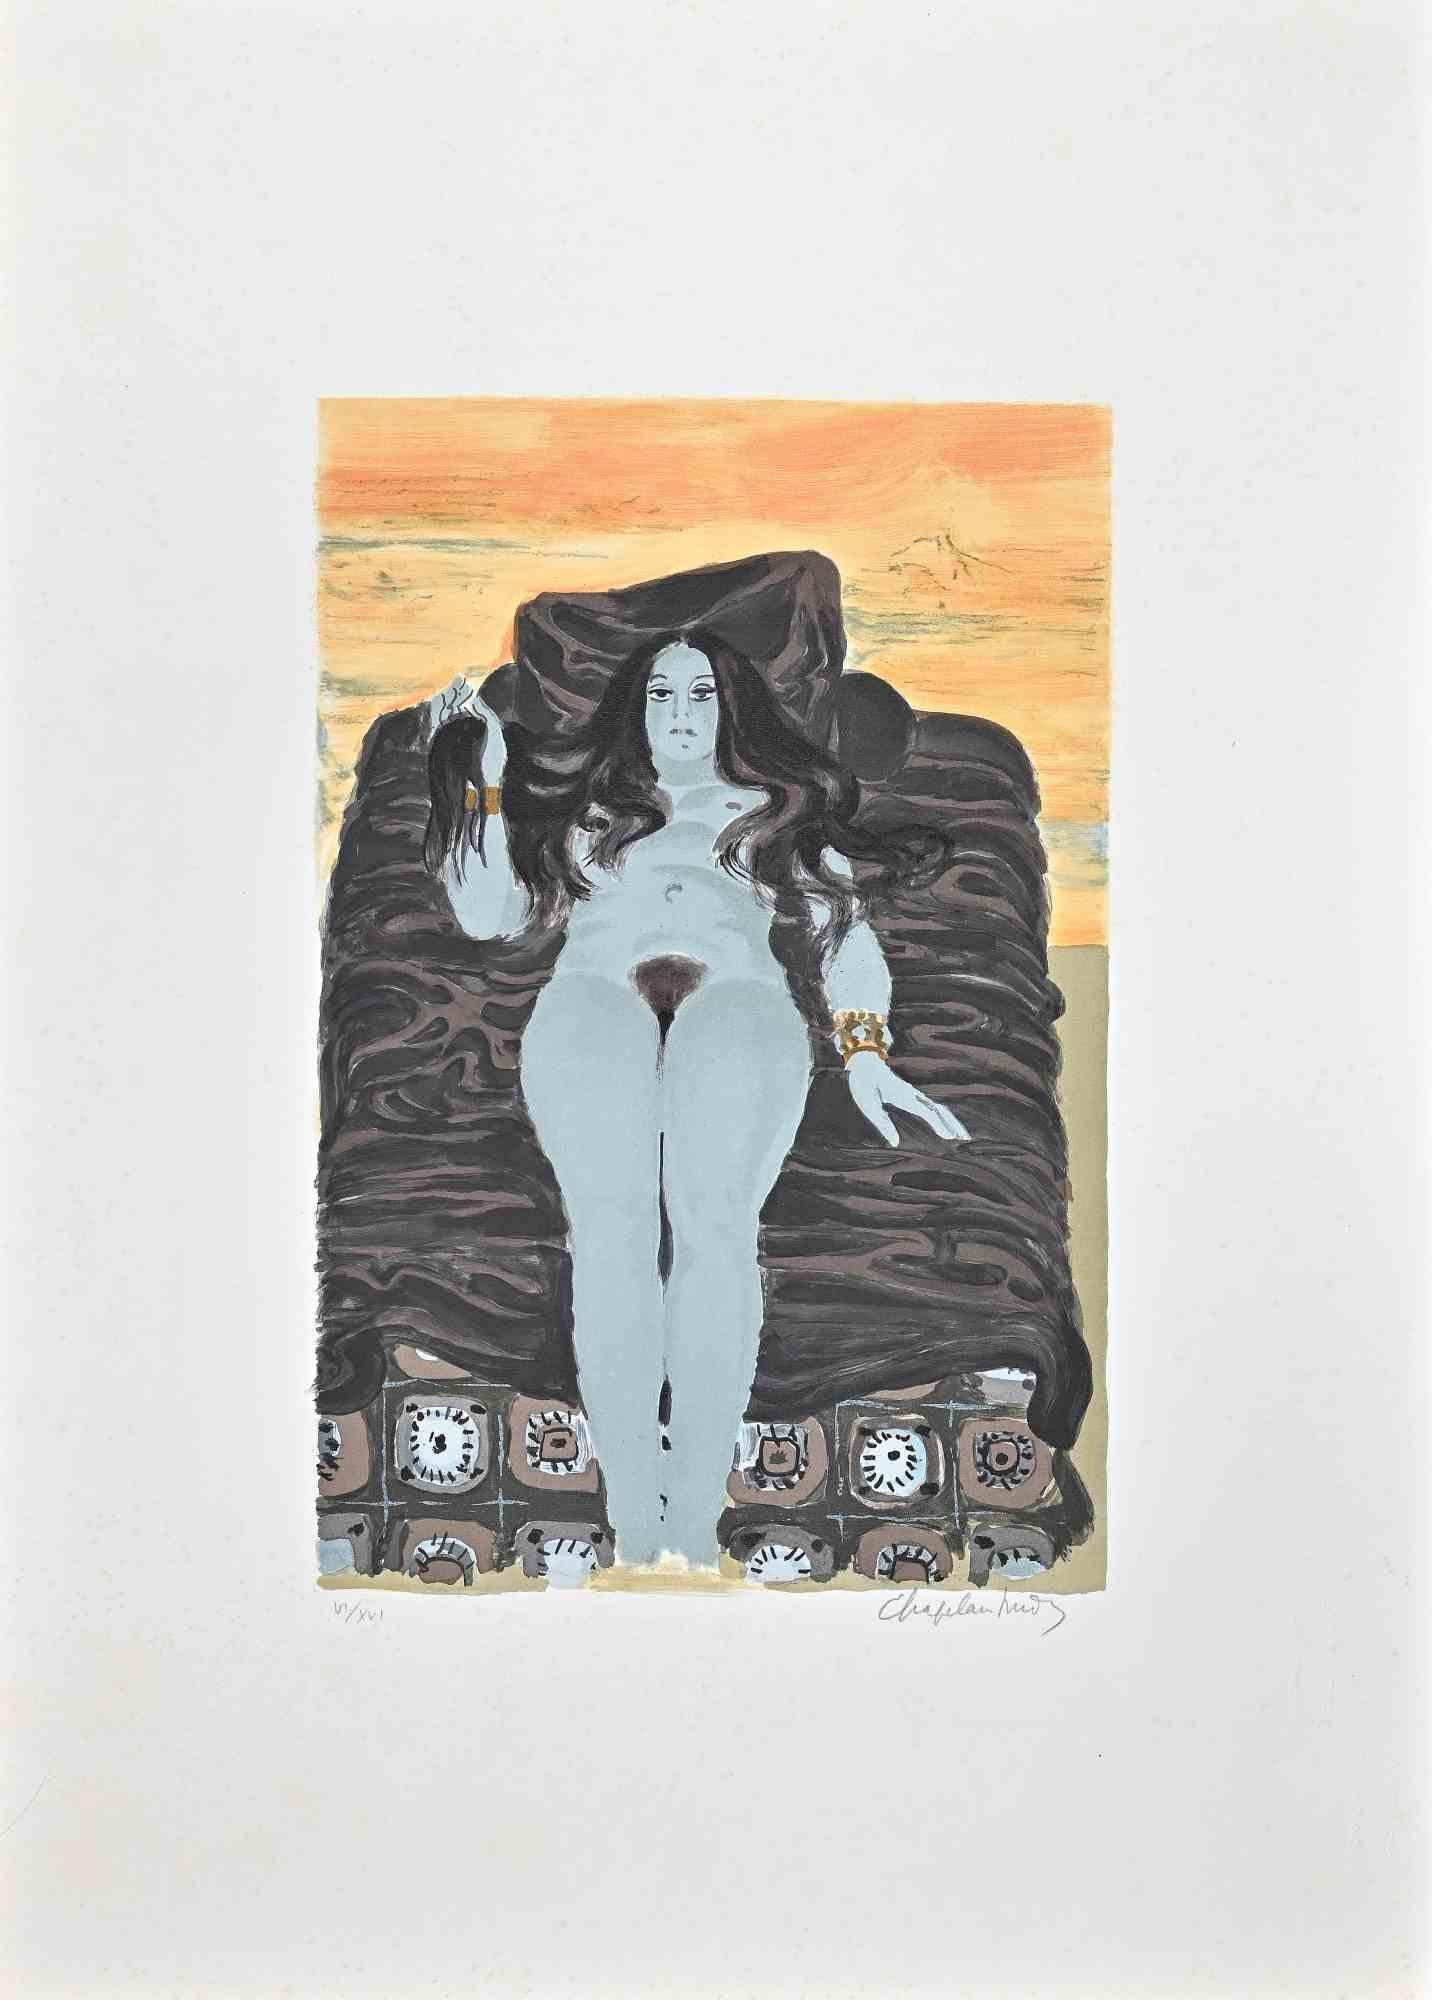 Le reste  est une lithographie originale en couleur réalisée par l'artiste Roger Chapelain-Midy dans les années 1970.

Signé à la main par l'artiste en bas à droite. Numéroté en bas à gauche. Edition VI/XVI.

L'œuvre représente une femme nue